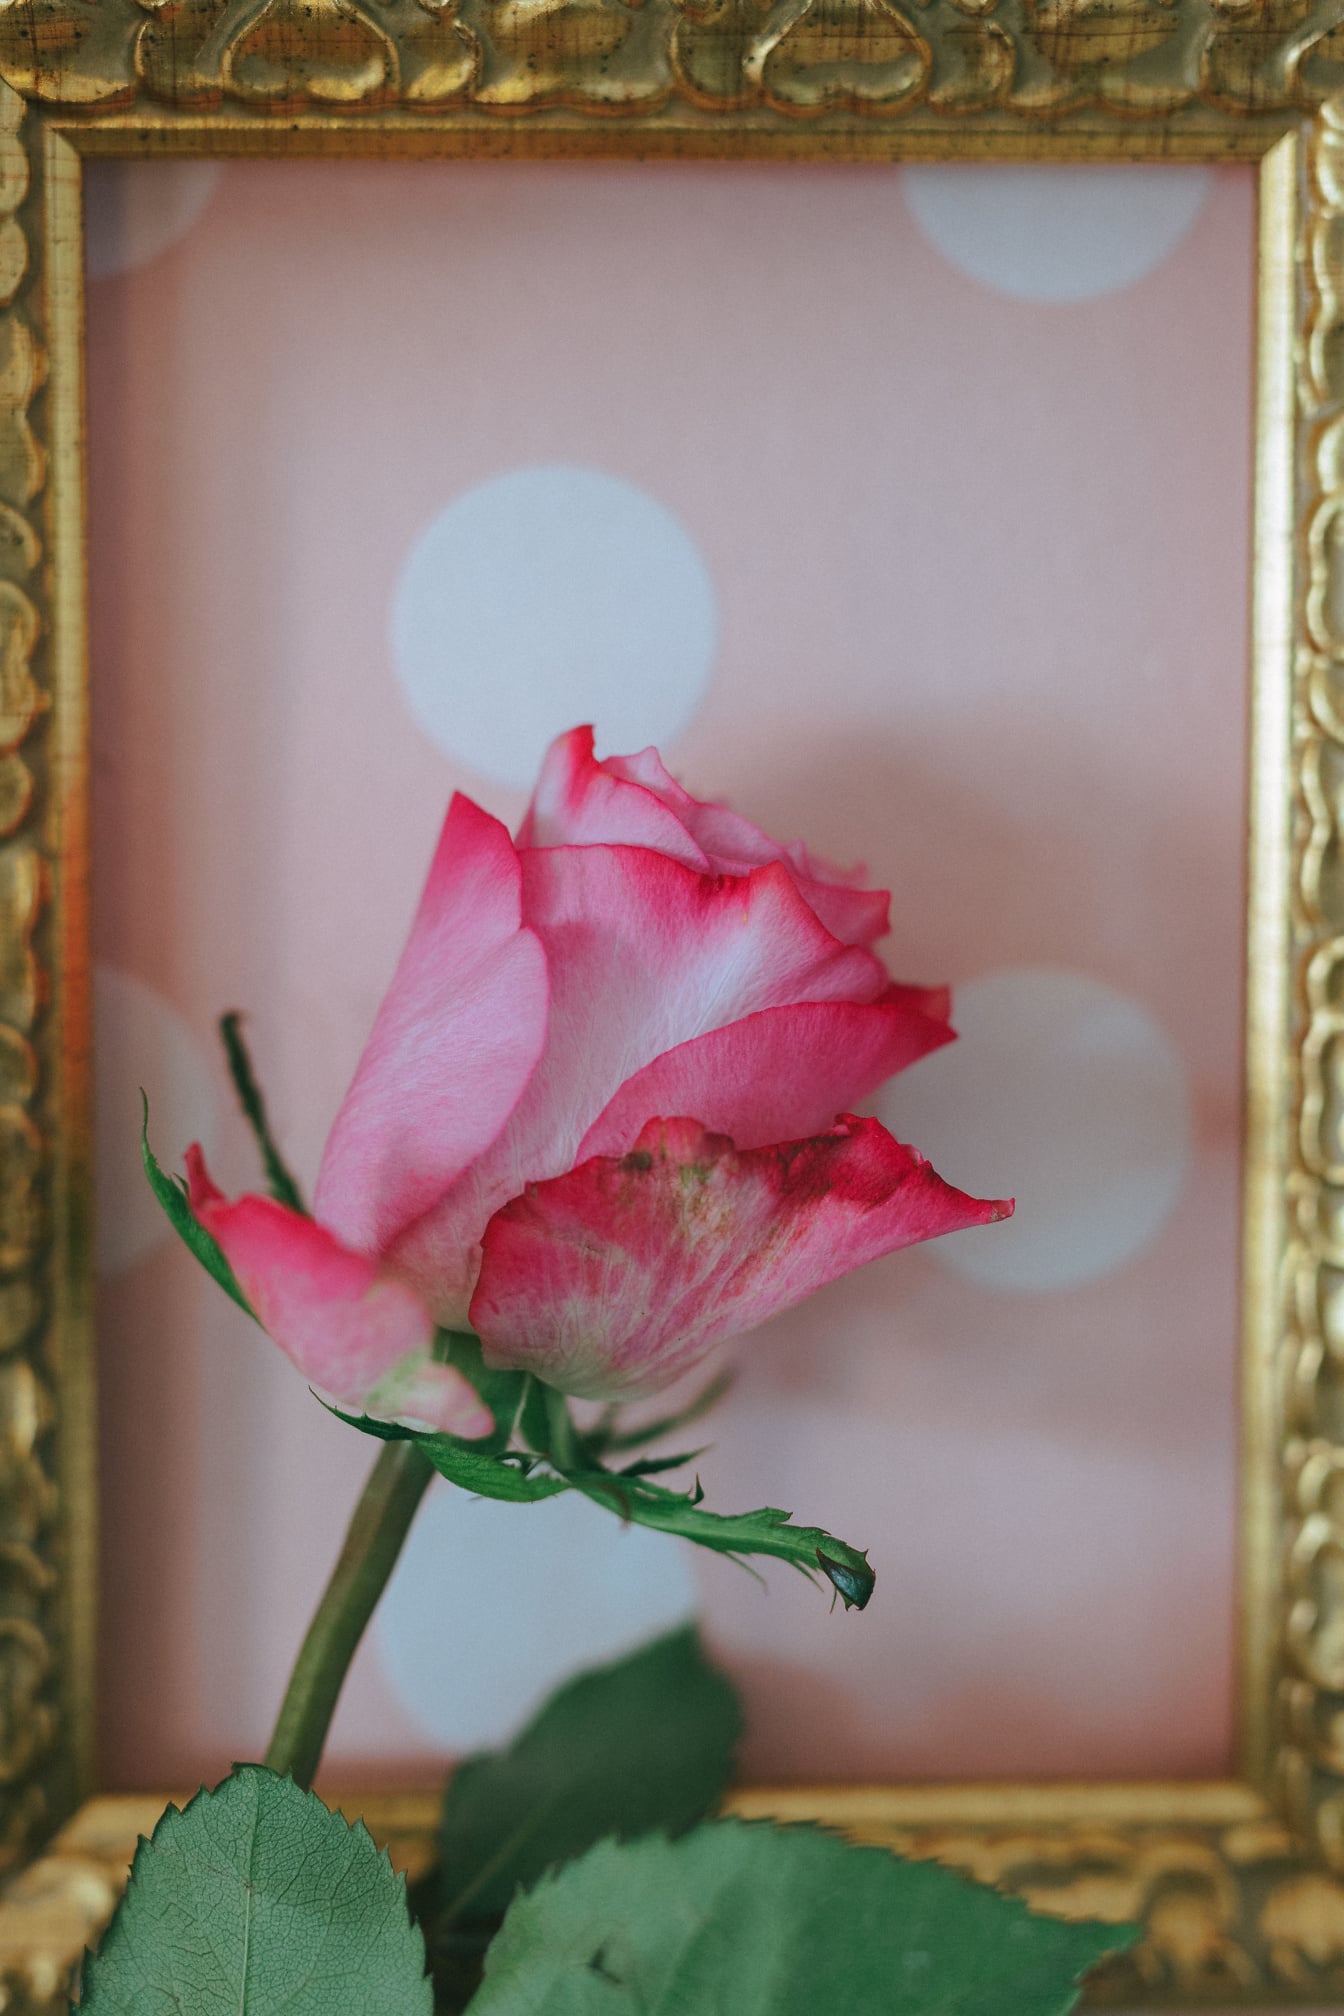 Zdjęcie różowawego pąka róży ze złotą drewnianą ramą jako tłem